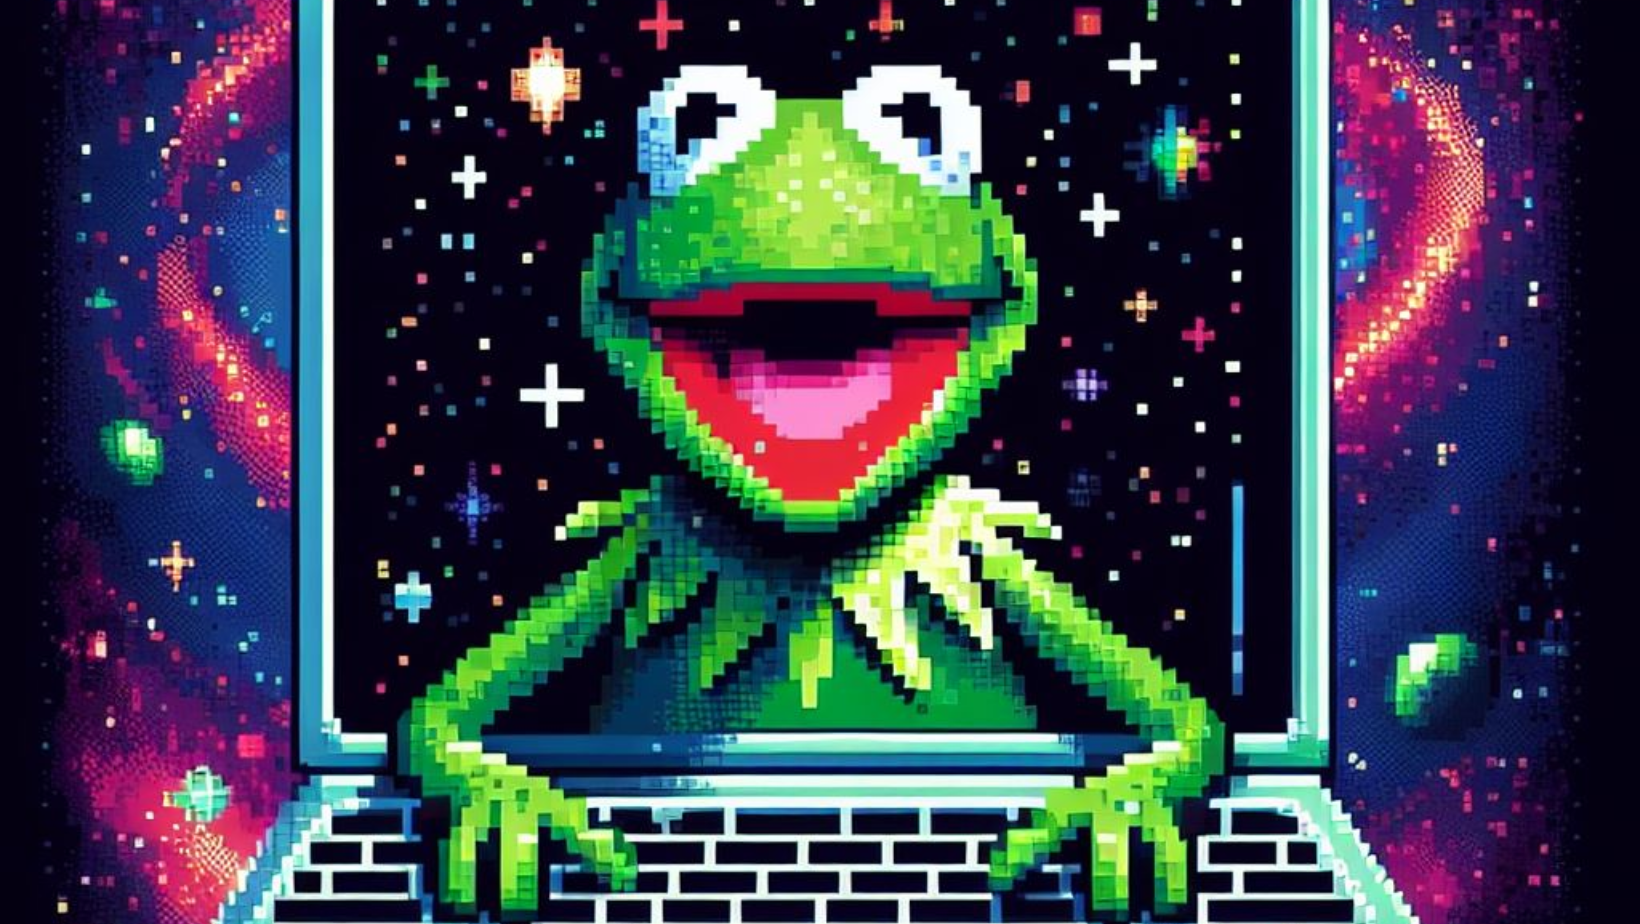 Kermit The Frog programando en la galaxia